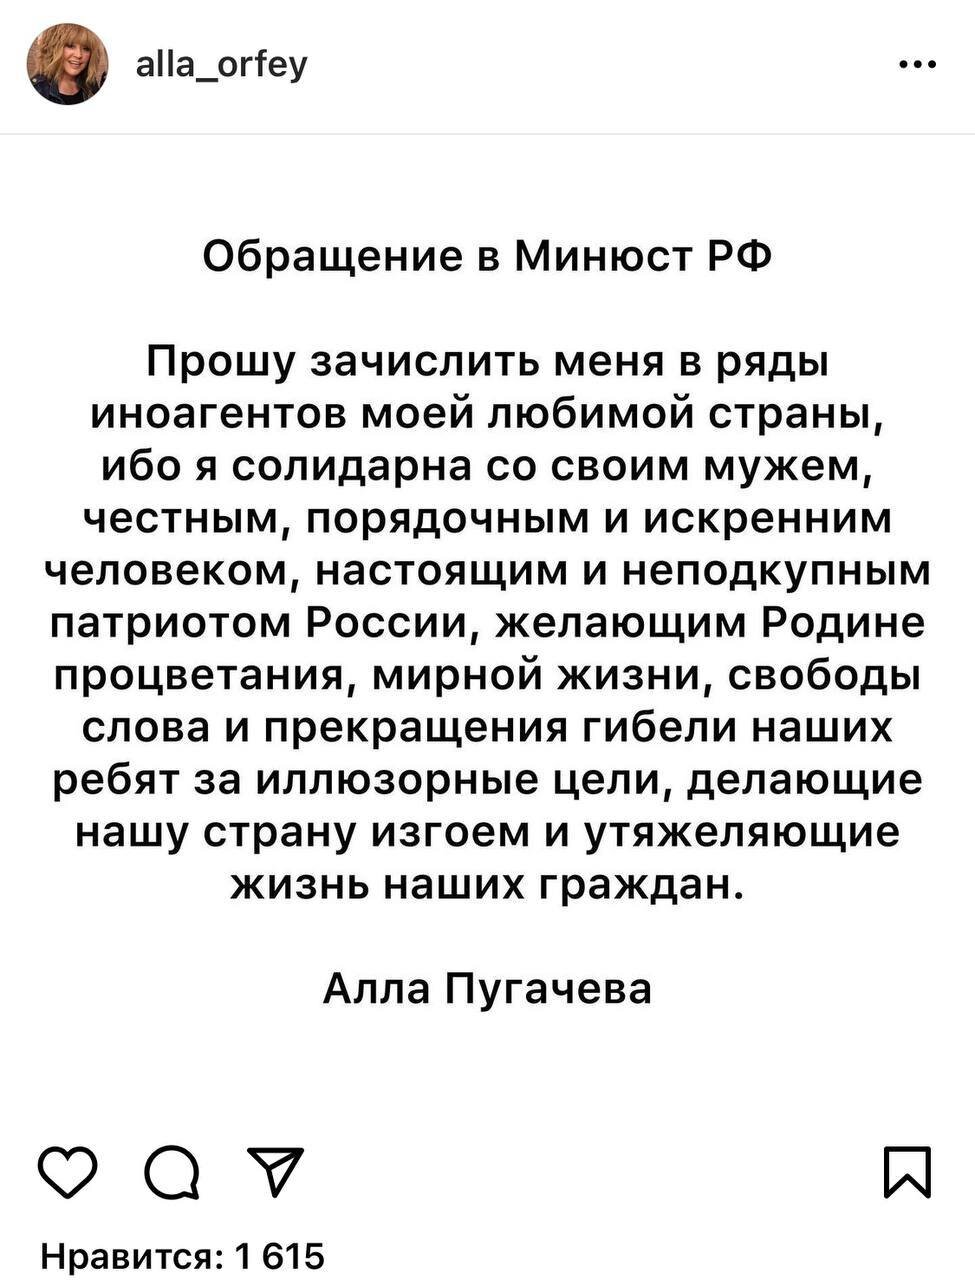 Настоящий неподкупный патриот»: Алла Пугачева эмоционально обратилась к  Минюсту РФ